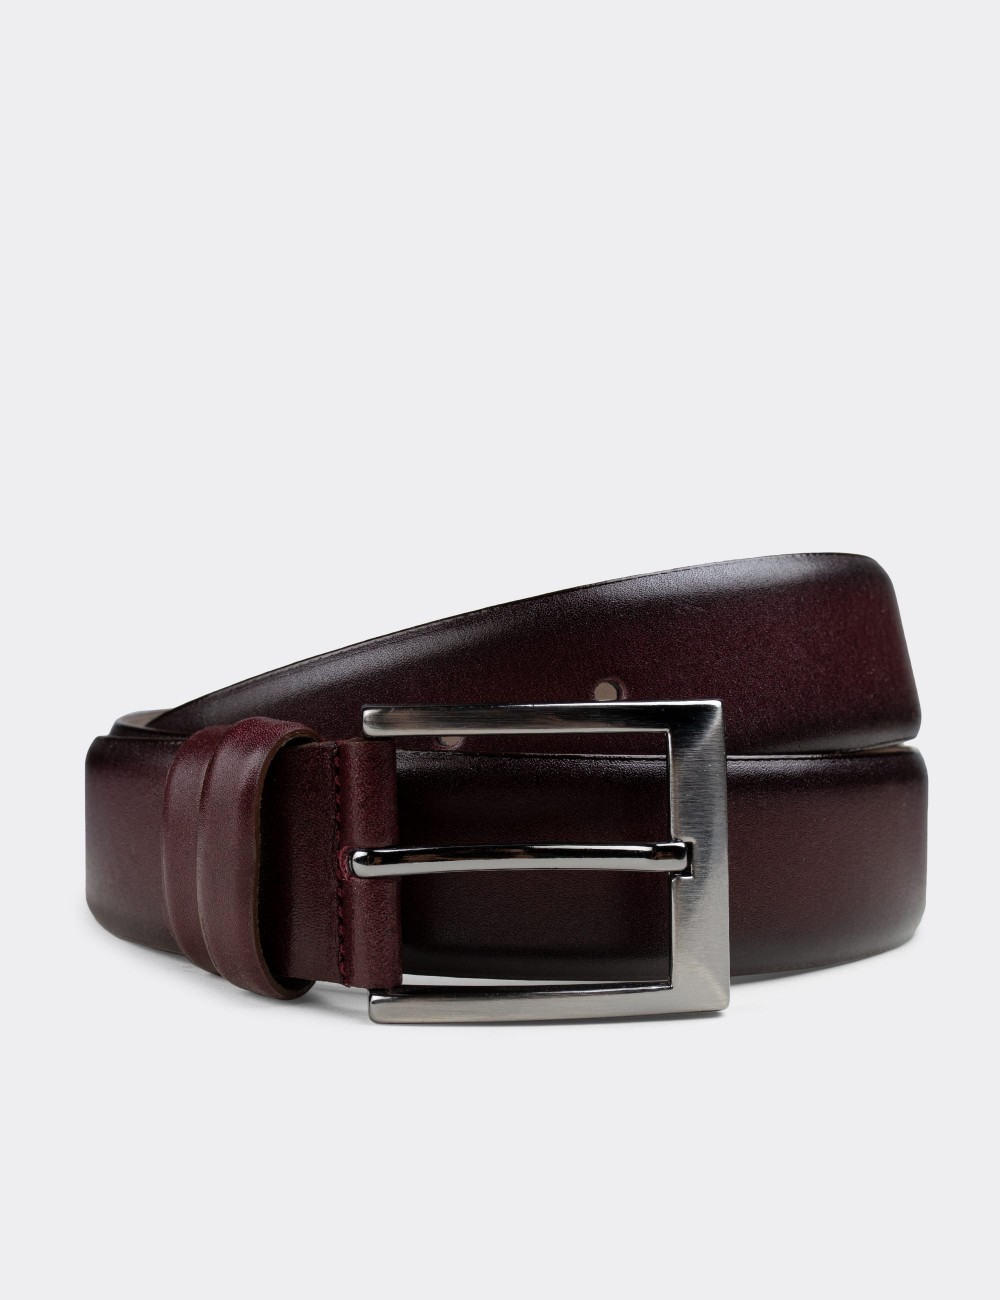  Leather Burgundy Men's Belt - K0407MBRDW01